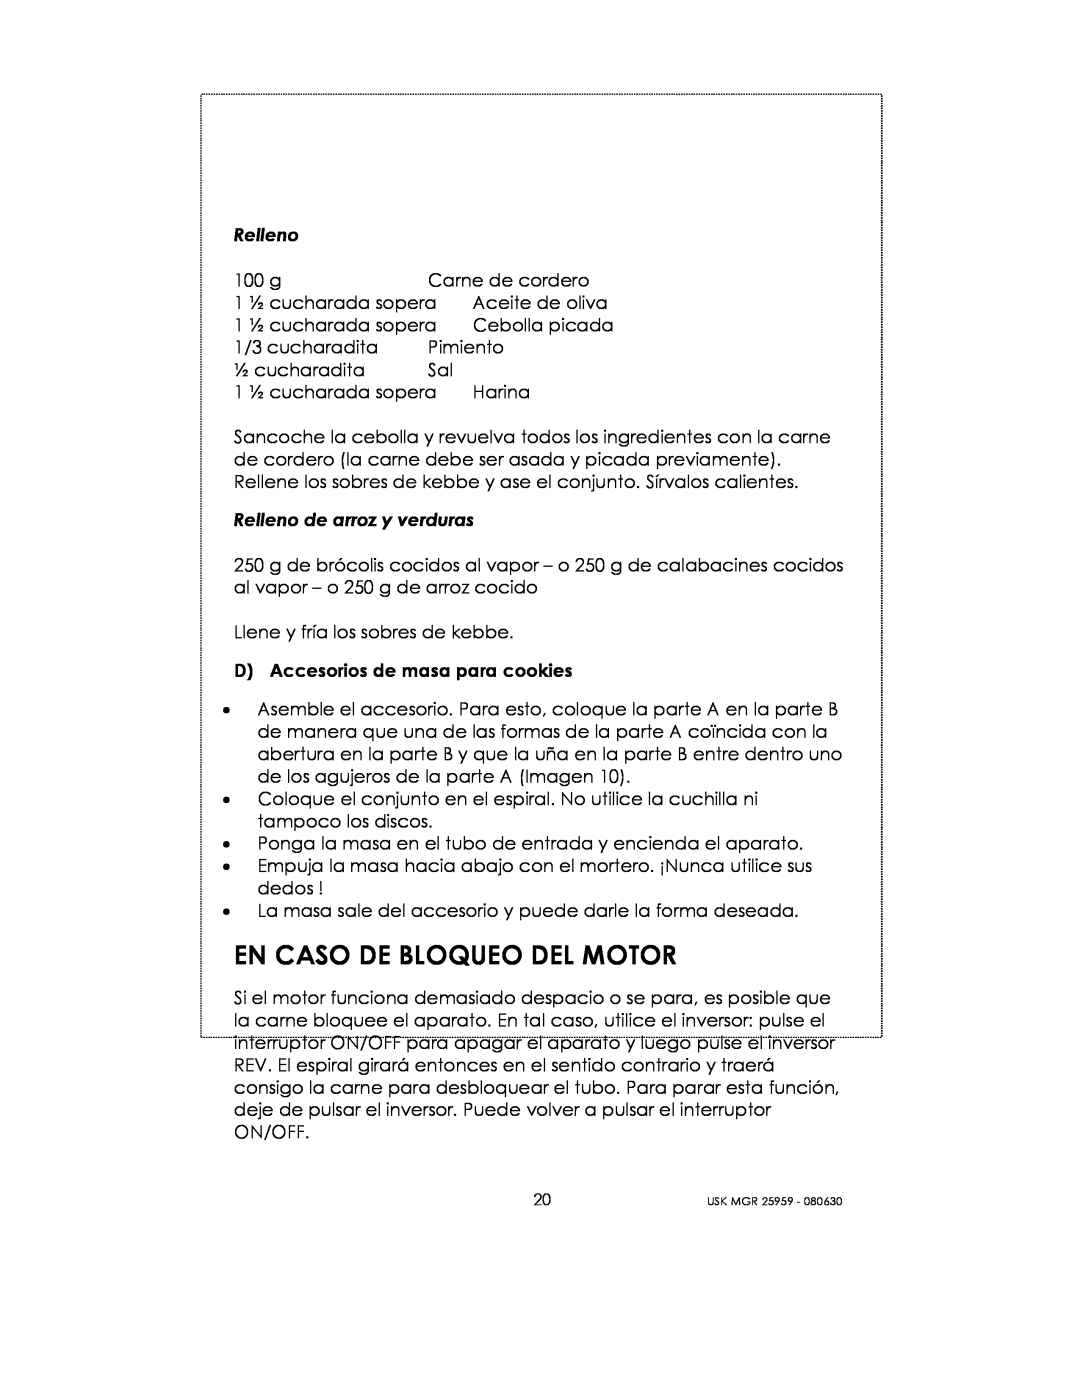 Kalorik USK MGR 25959 manual En Caso De Bloqueo Del Motor 